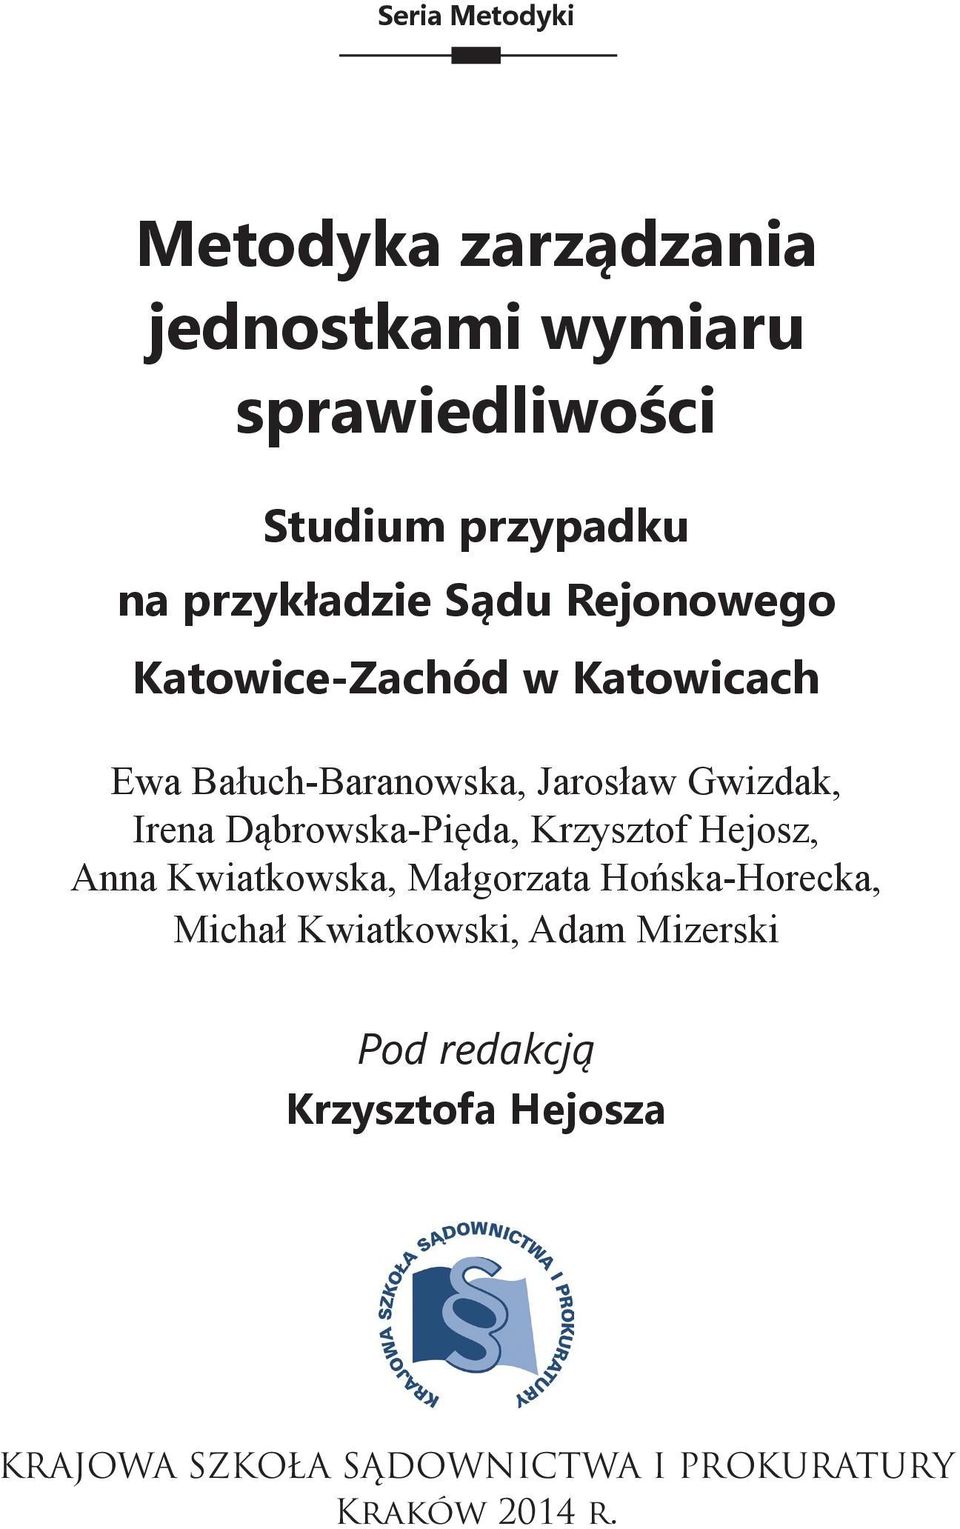 Irena Dąbrowska-Pięda, Krzysztof Hejosz, Anna Kwiatkowska, Małgorzata Hońska-Horecka, Michał